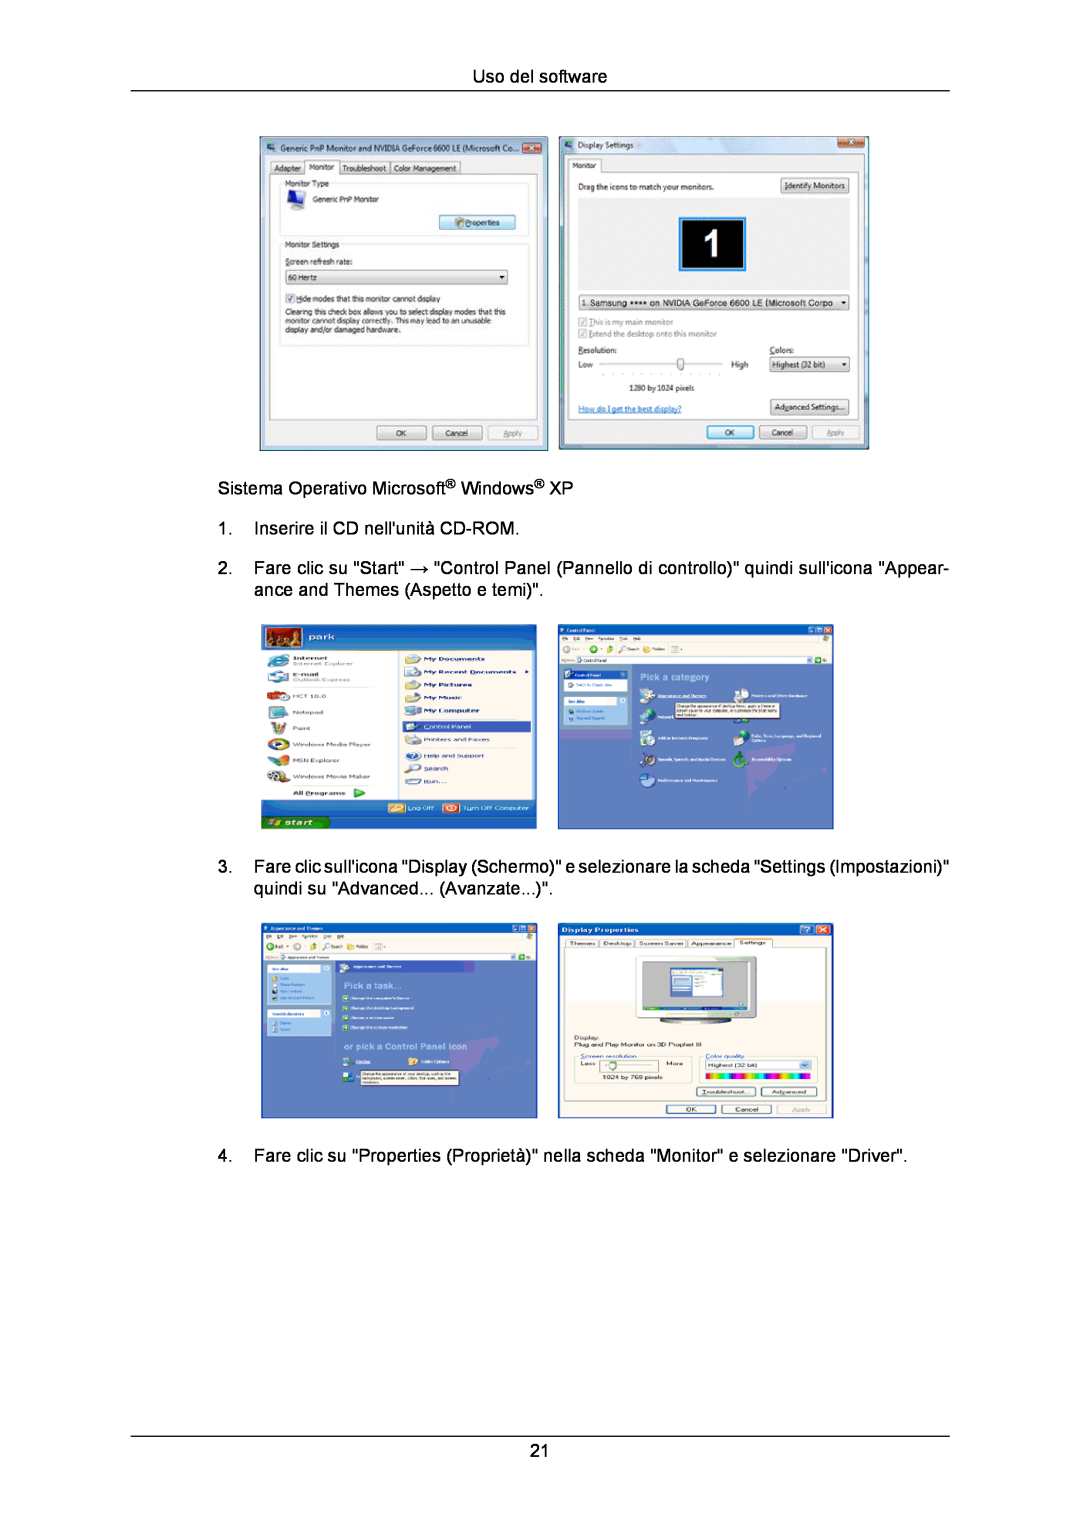 Samsung LS24CMKKFV/EN manual Uso del software, Sistema Operativo Microsoft Windows XP, Inserire il CD nellunità CD-ROM 